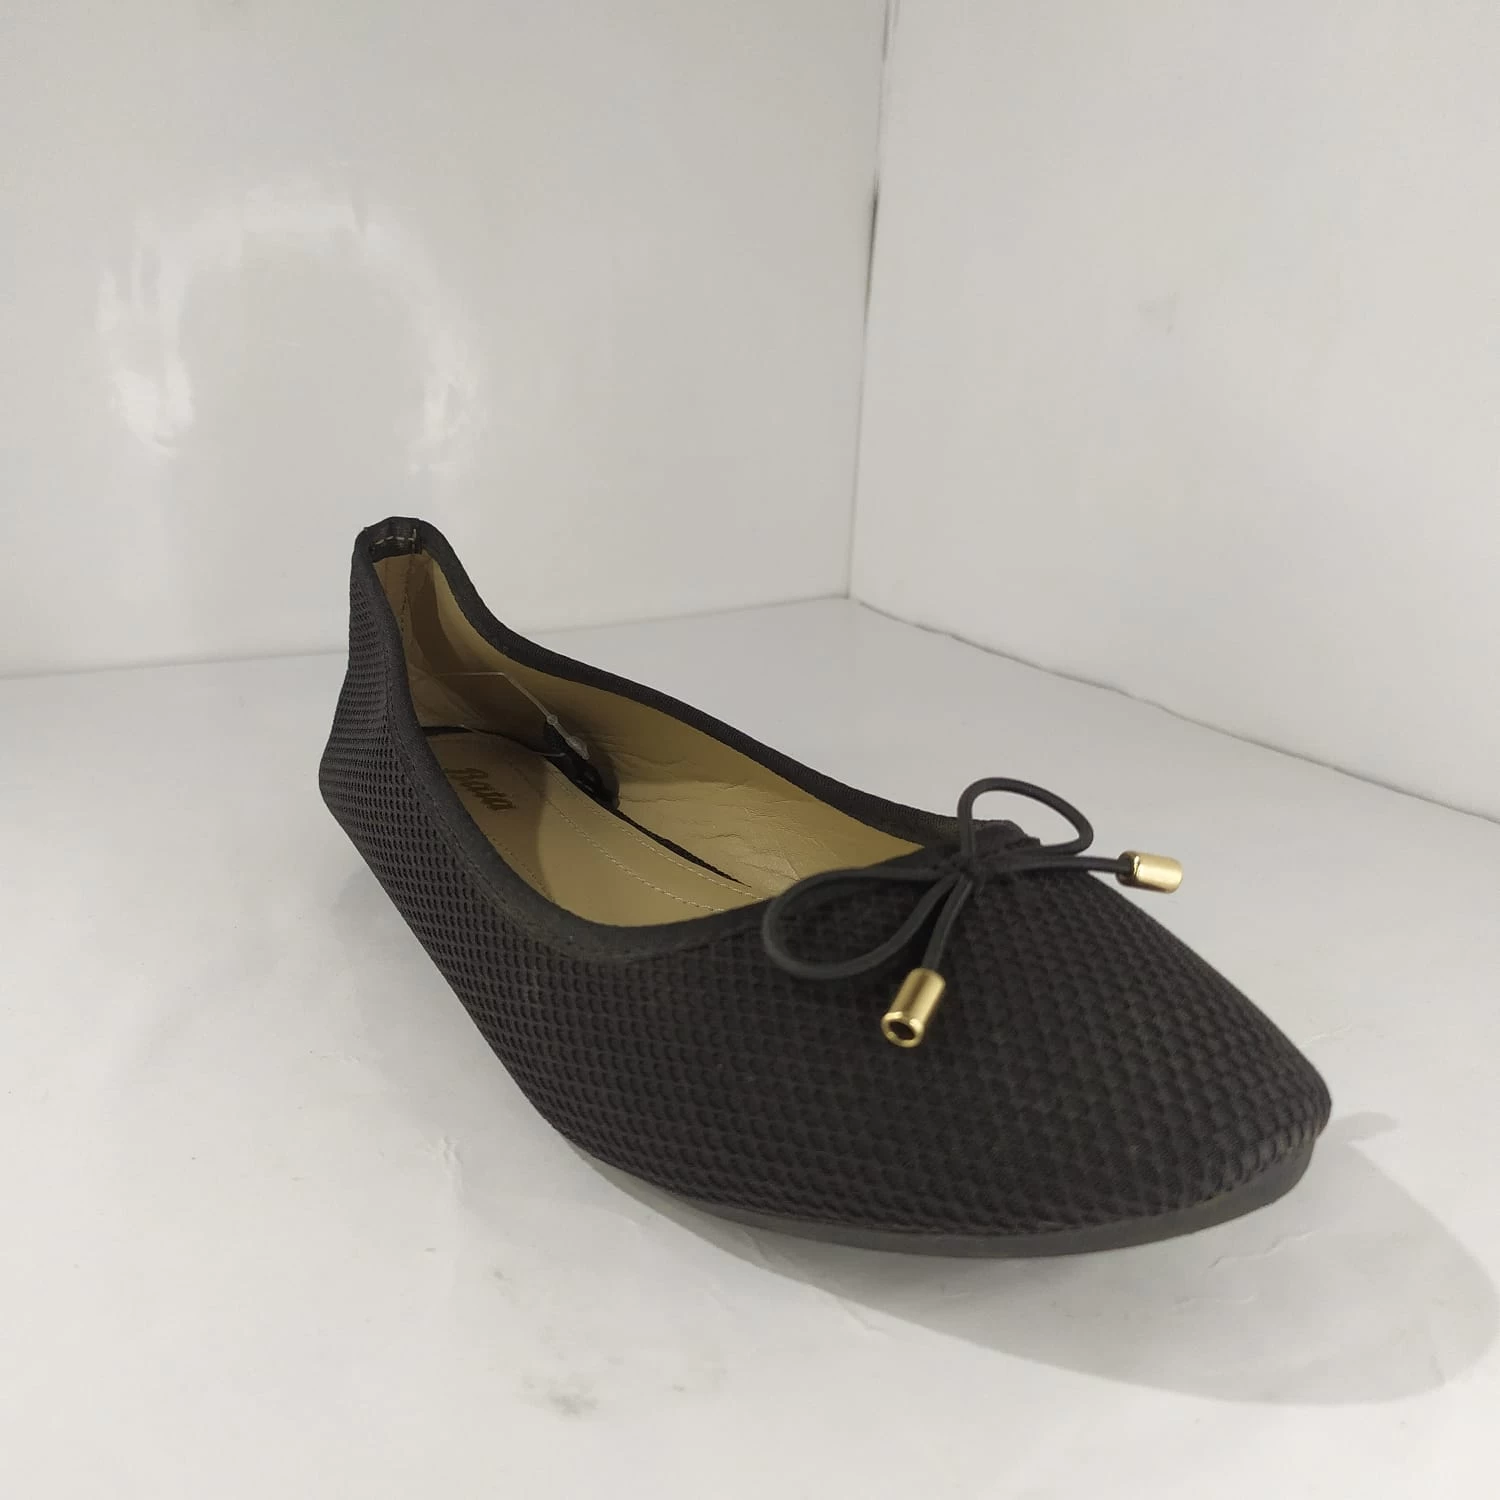 Bata Slip-on Loafer Shoe for Daily Walking for Women's UK-6 Black